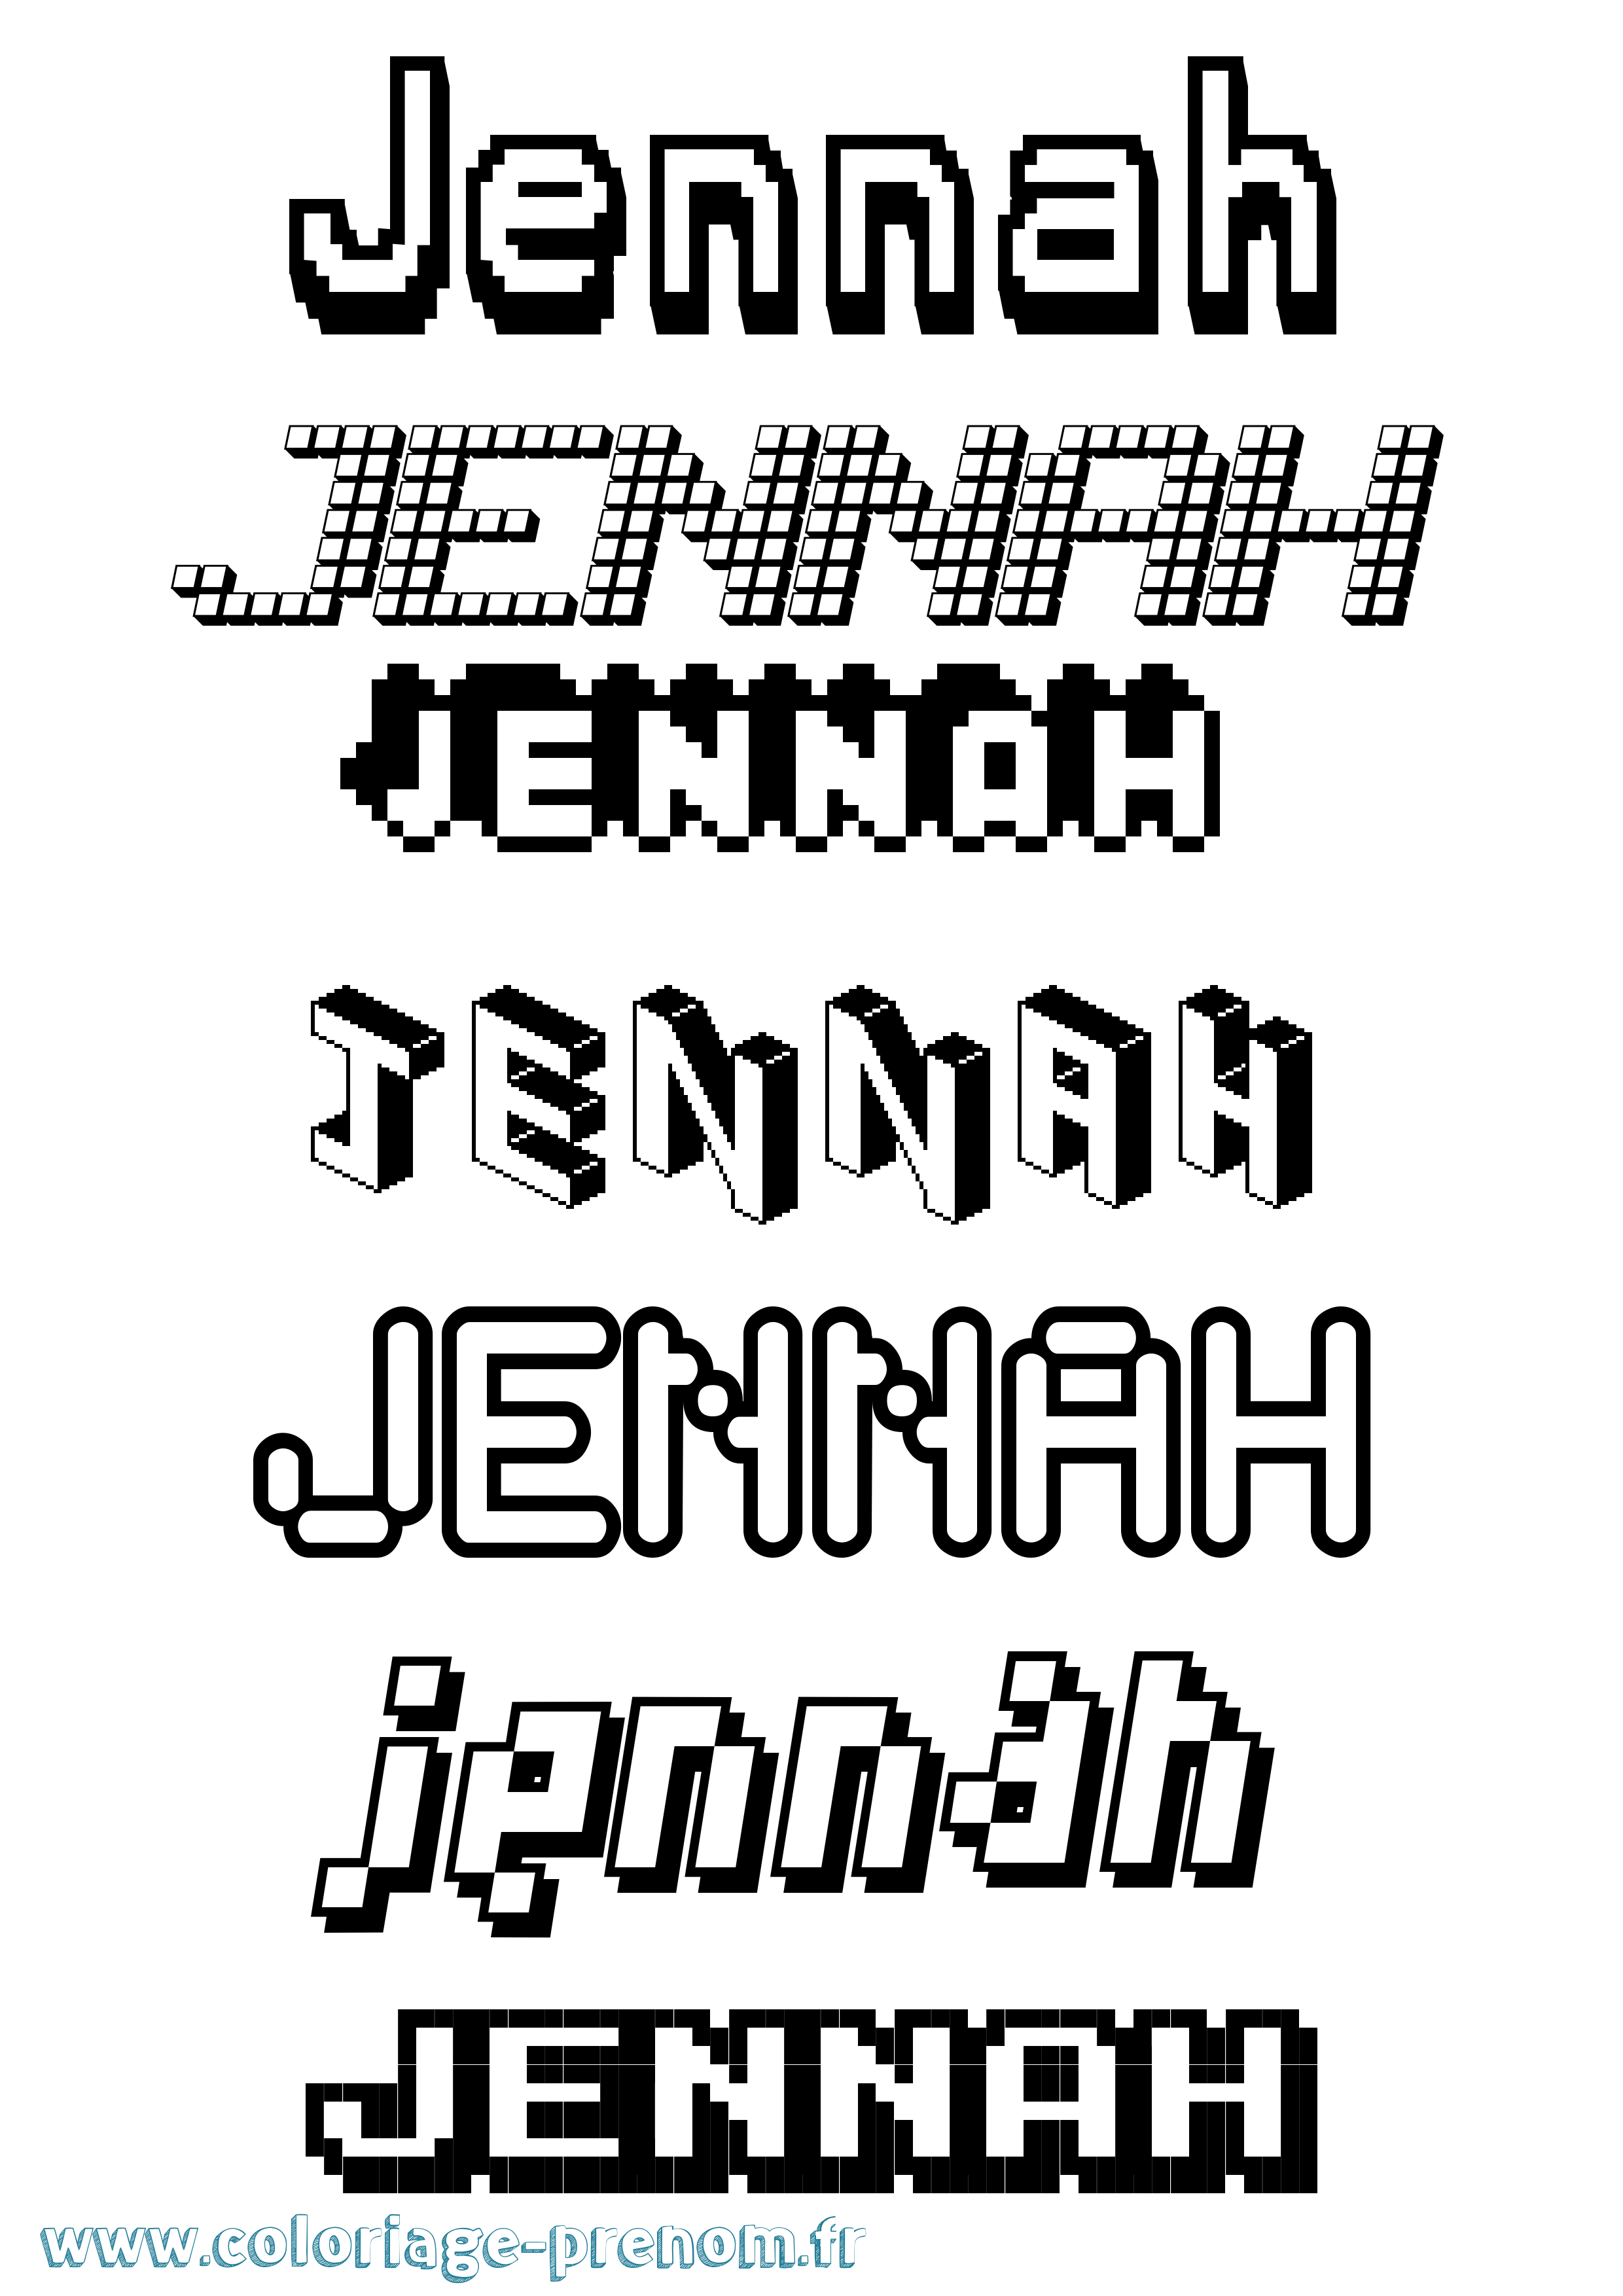 Coloriage prénom Jennah